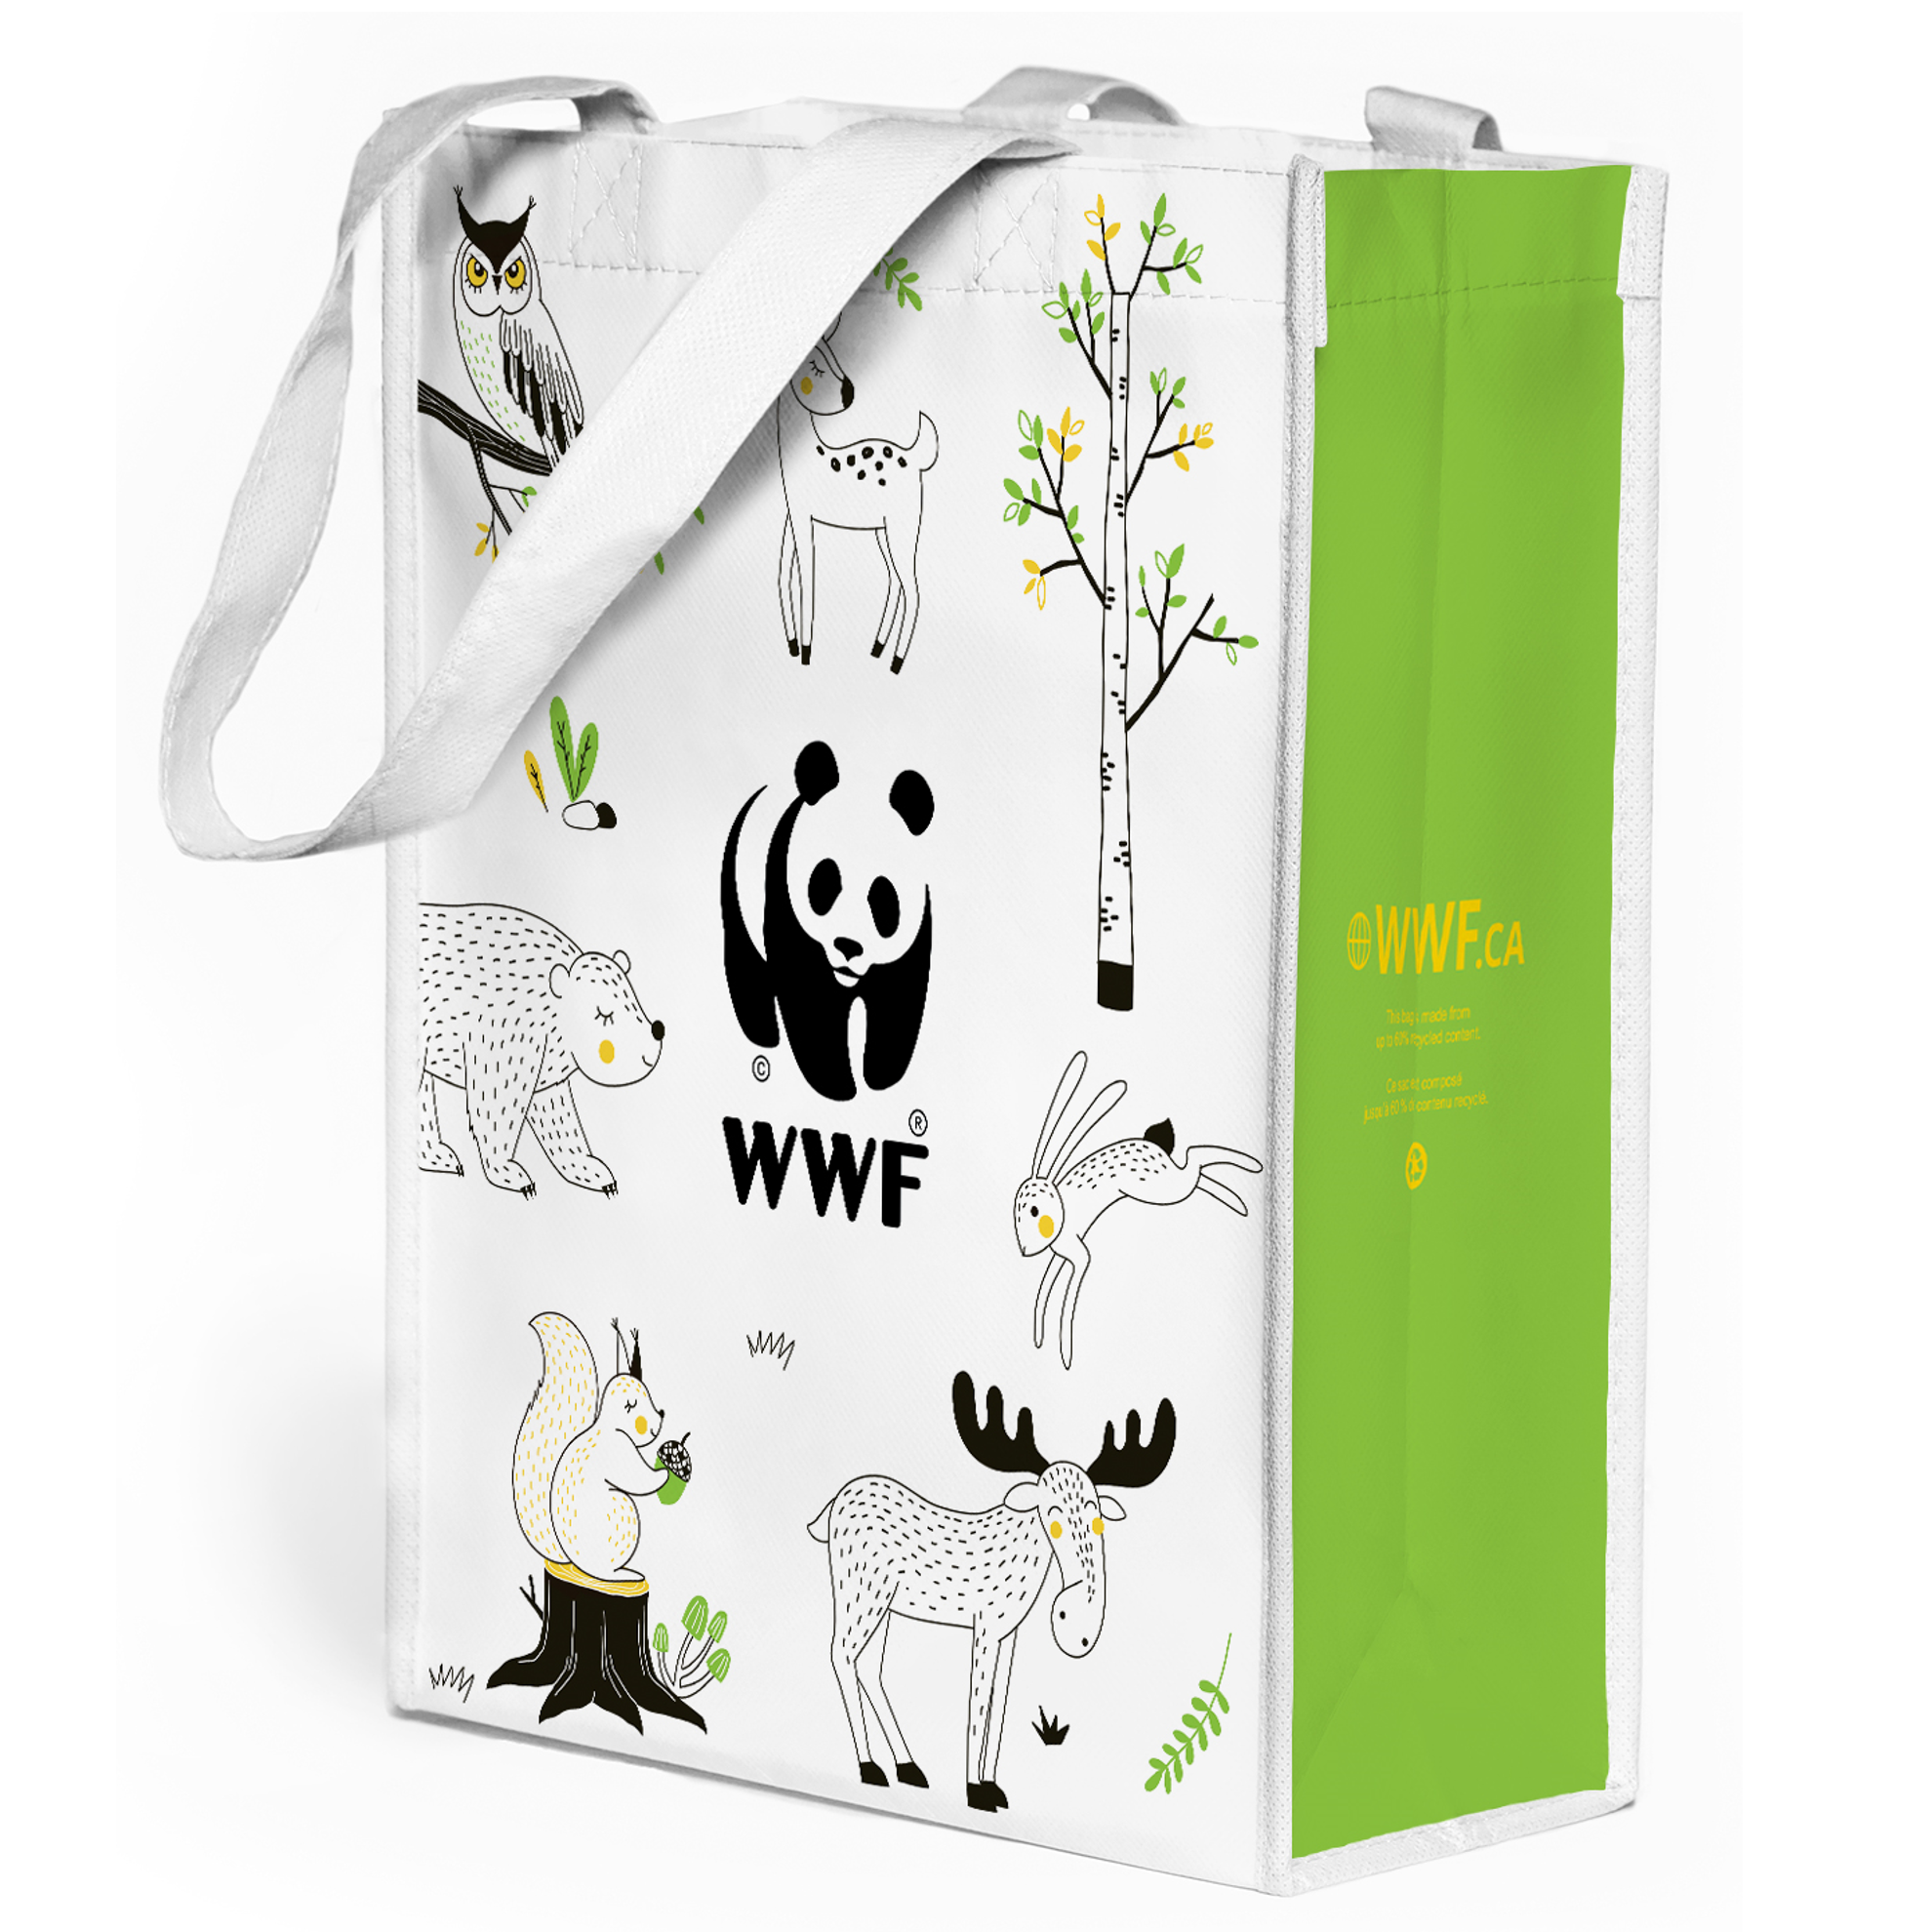 Adoption Delivery Bag - FR - WWF-Canada